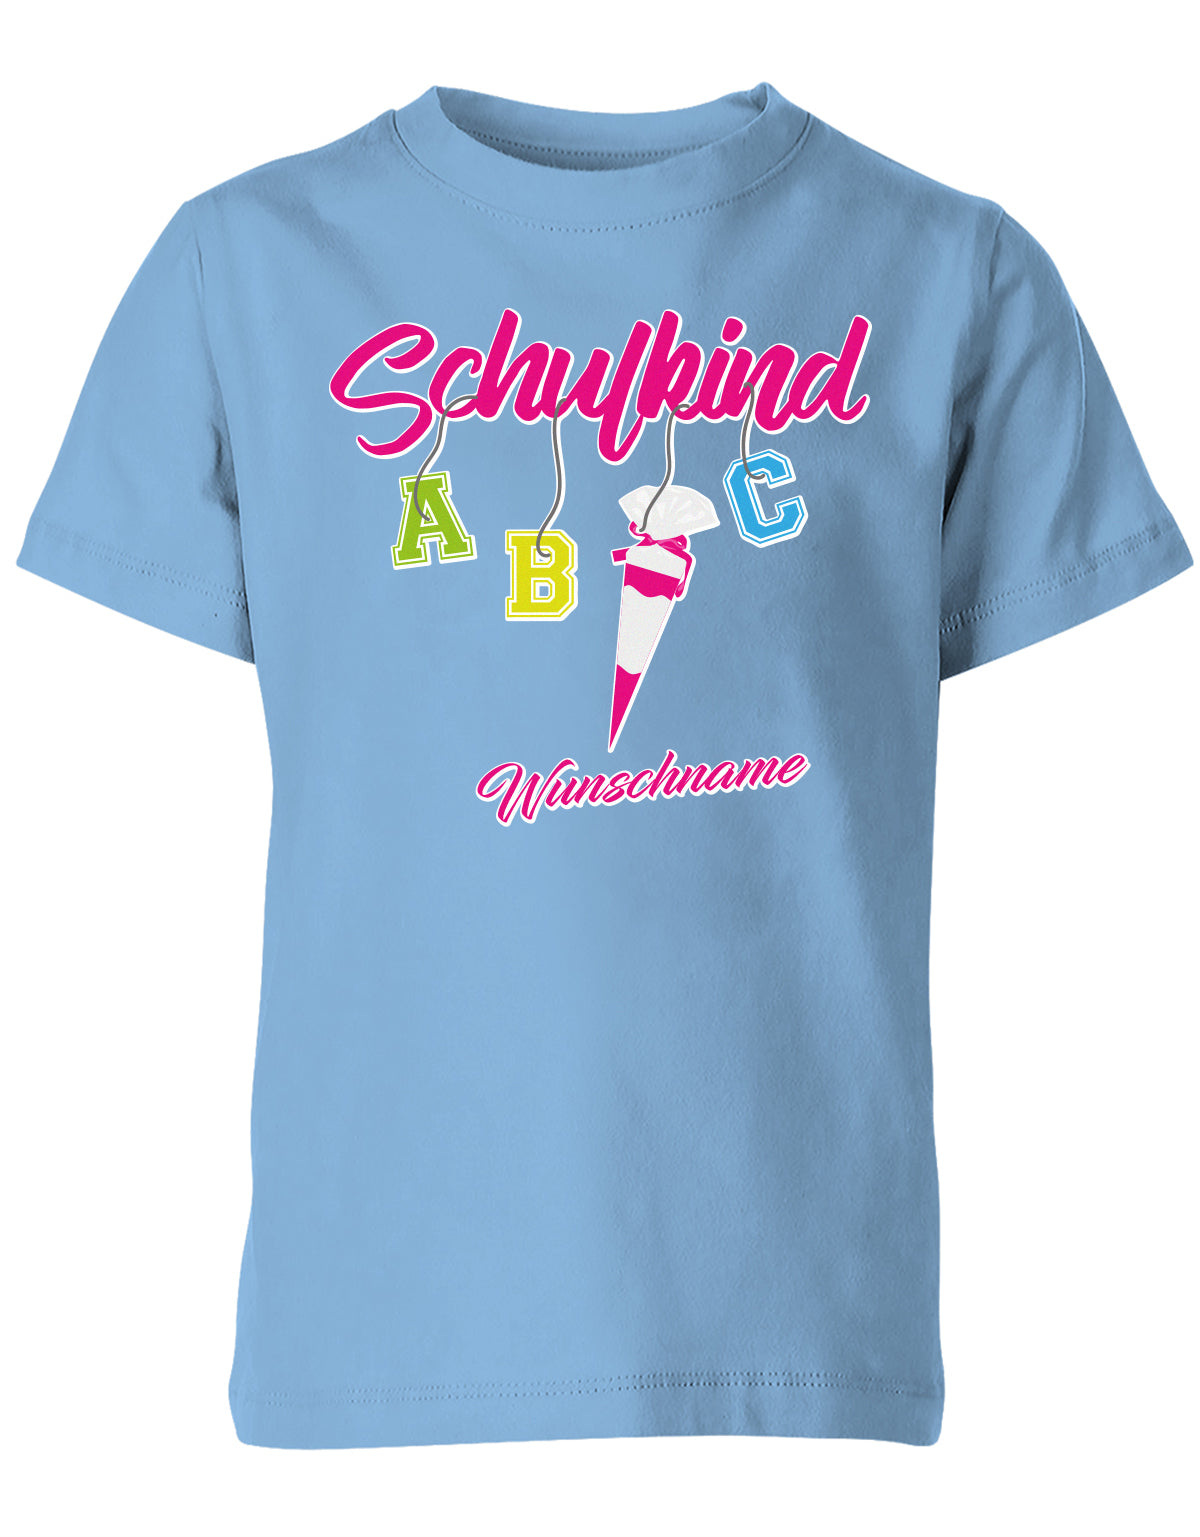 Schulkind ABC Schultüte Wunschname Blau oder Pink Einschulung Kinder T-Shirt  Hellblau pink